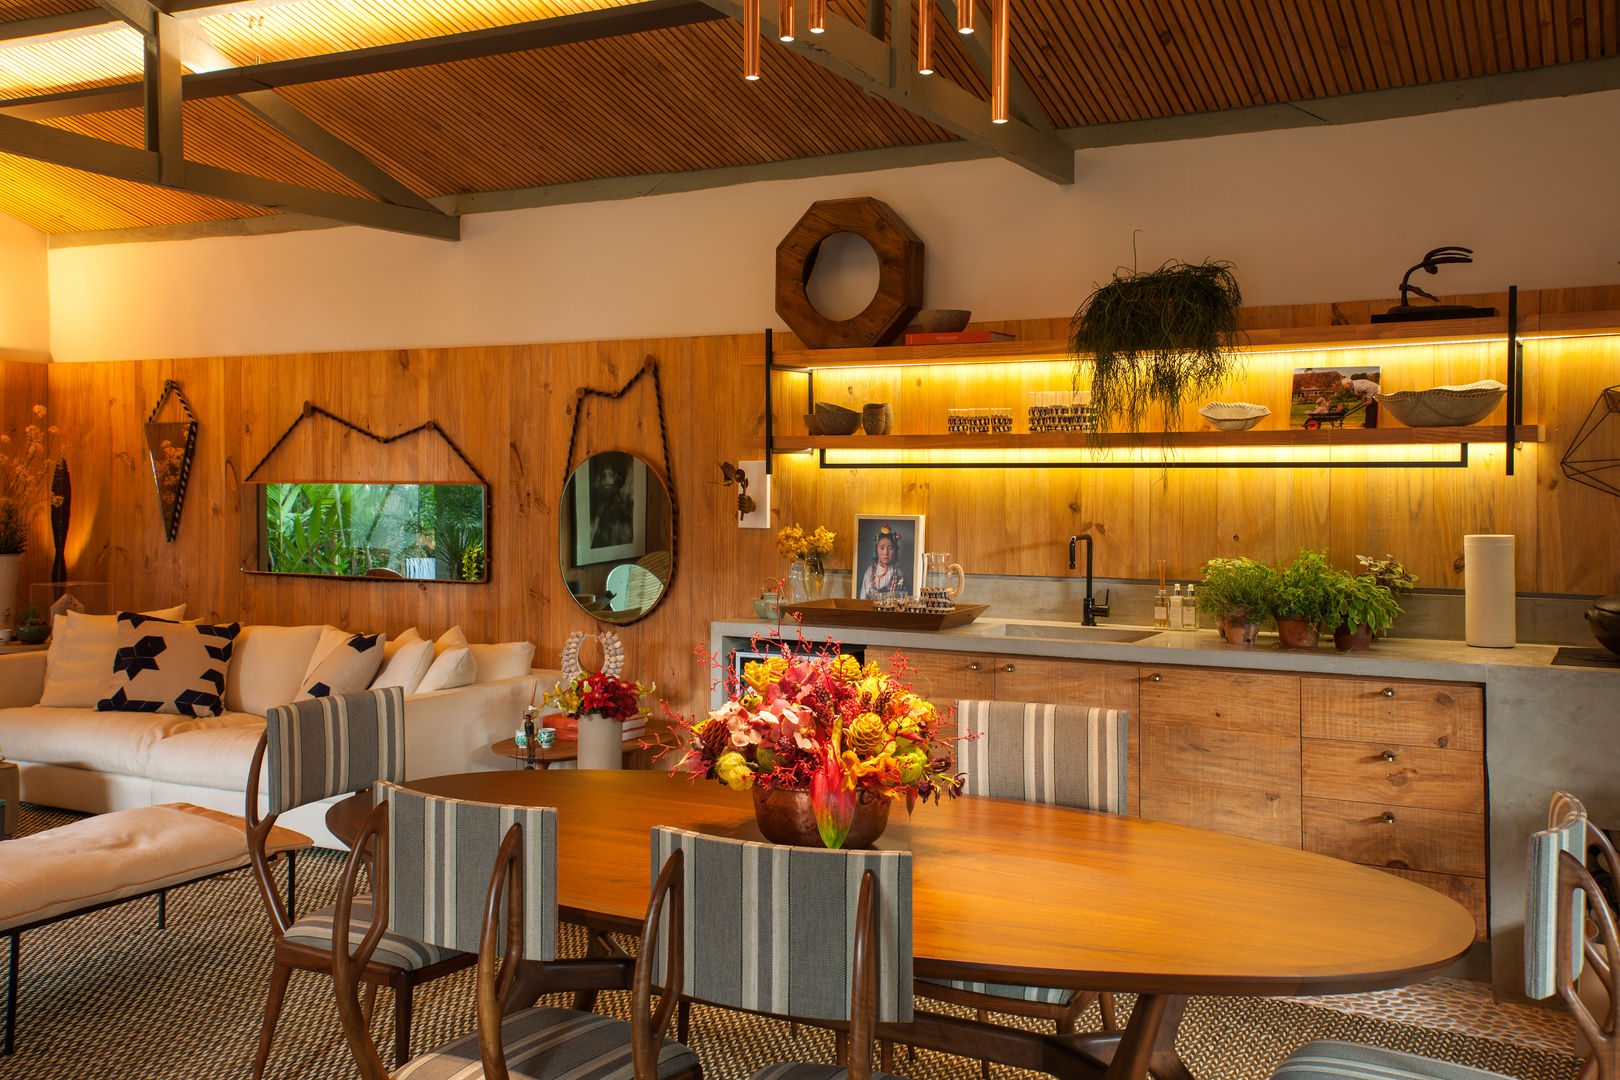 Casa Cor 2015/ A Casa da Gente, Marina Linhares Decoração de Interiores Marina Linhares Decoração de Interiores Tropical style kitchen